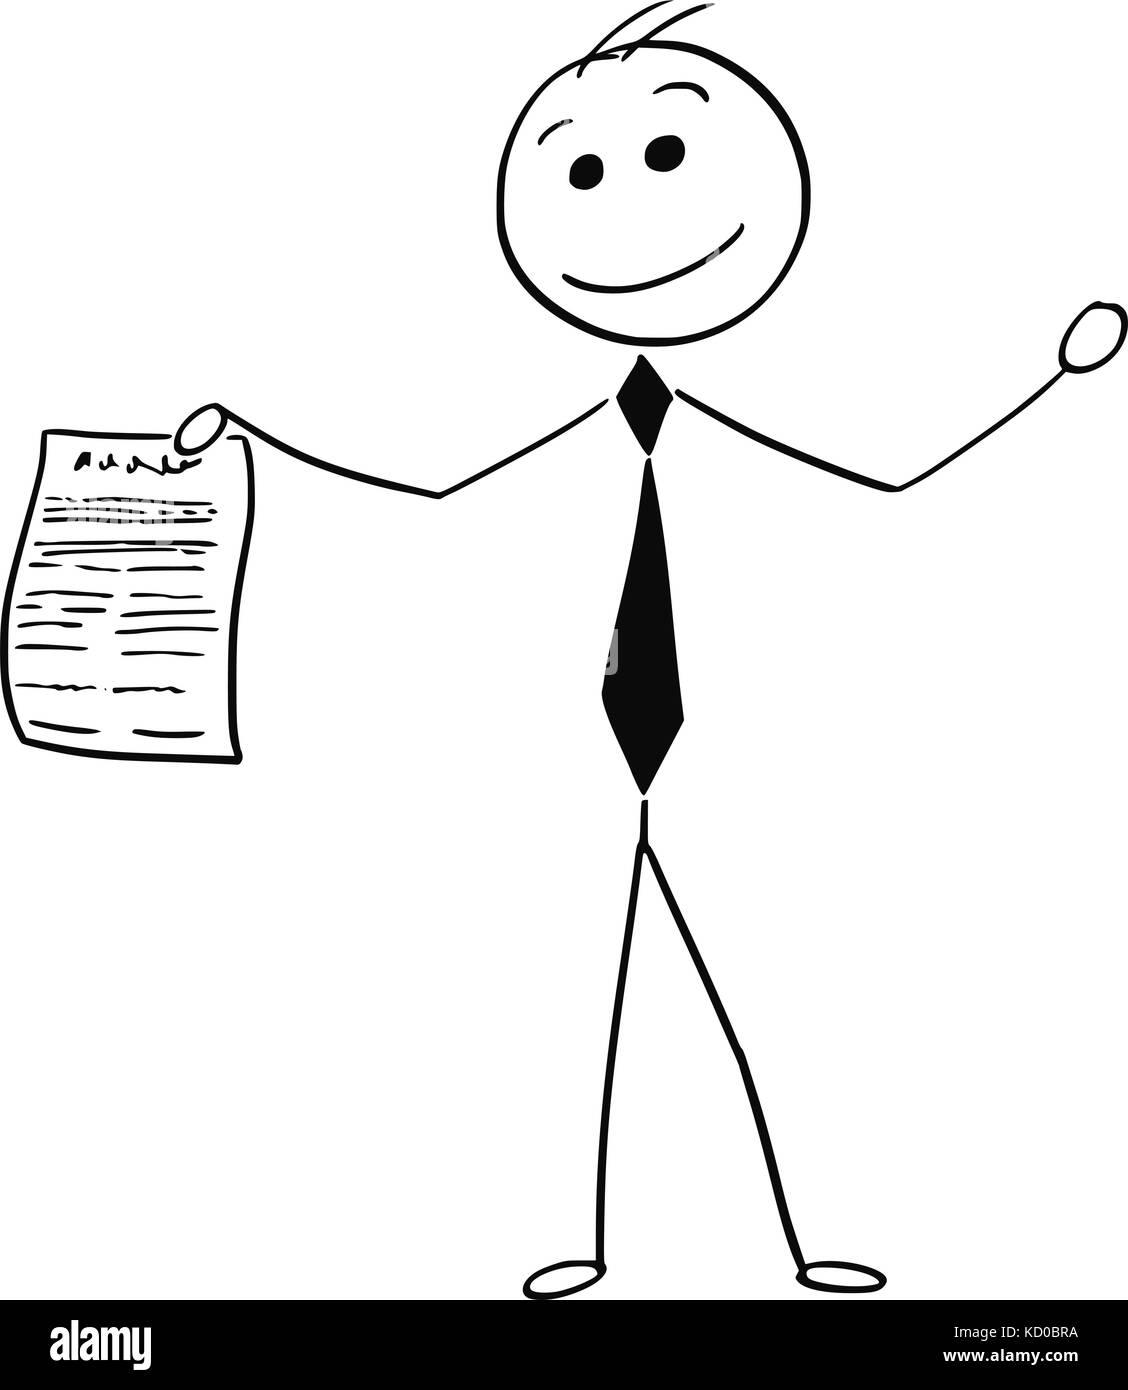 Cartoon stick Mann Abbildung von lächelnden Geschäftsmann holding Stück Papier oder auf Vereinbarung. Stock Vektor